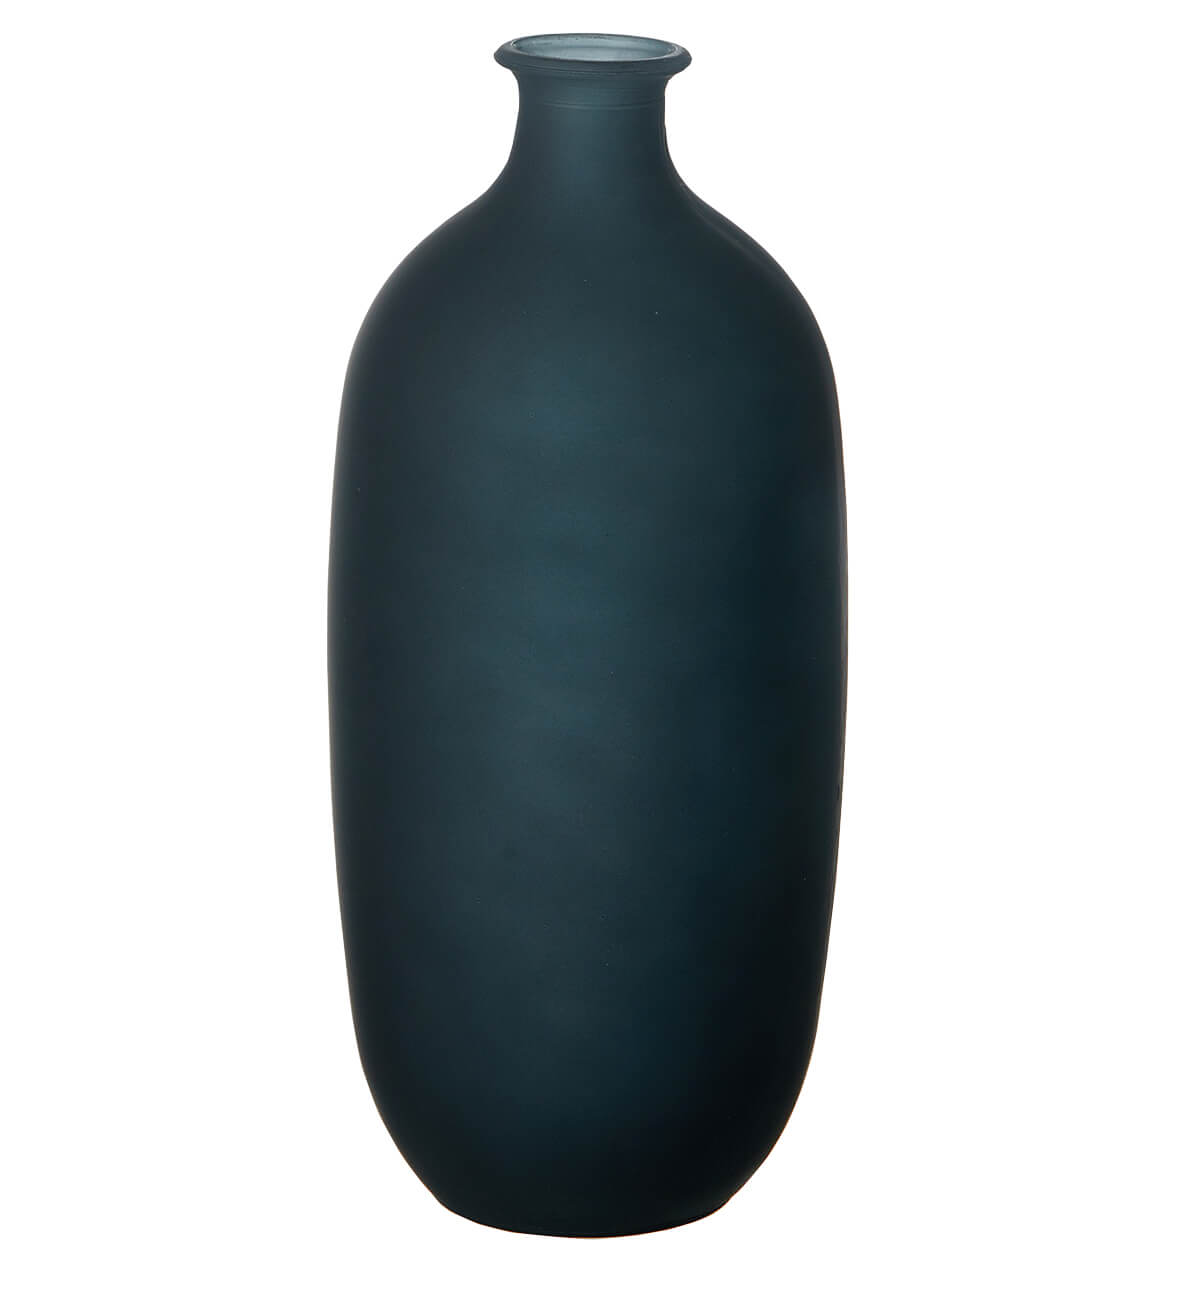 Flaschenvase BARCELONA - minimalistisch und elegant aus recyceltem Glas